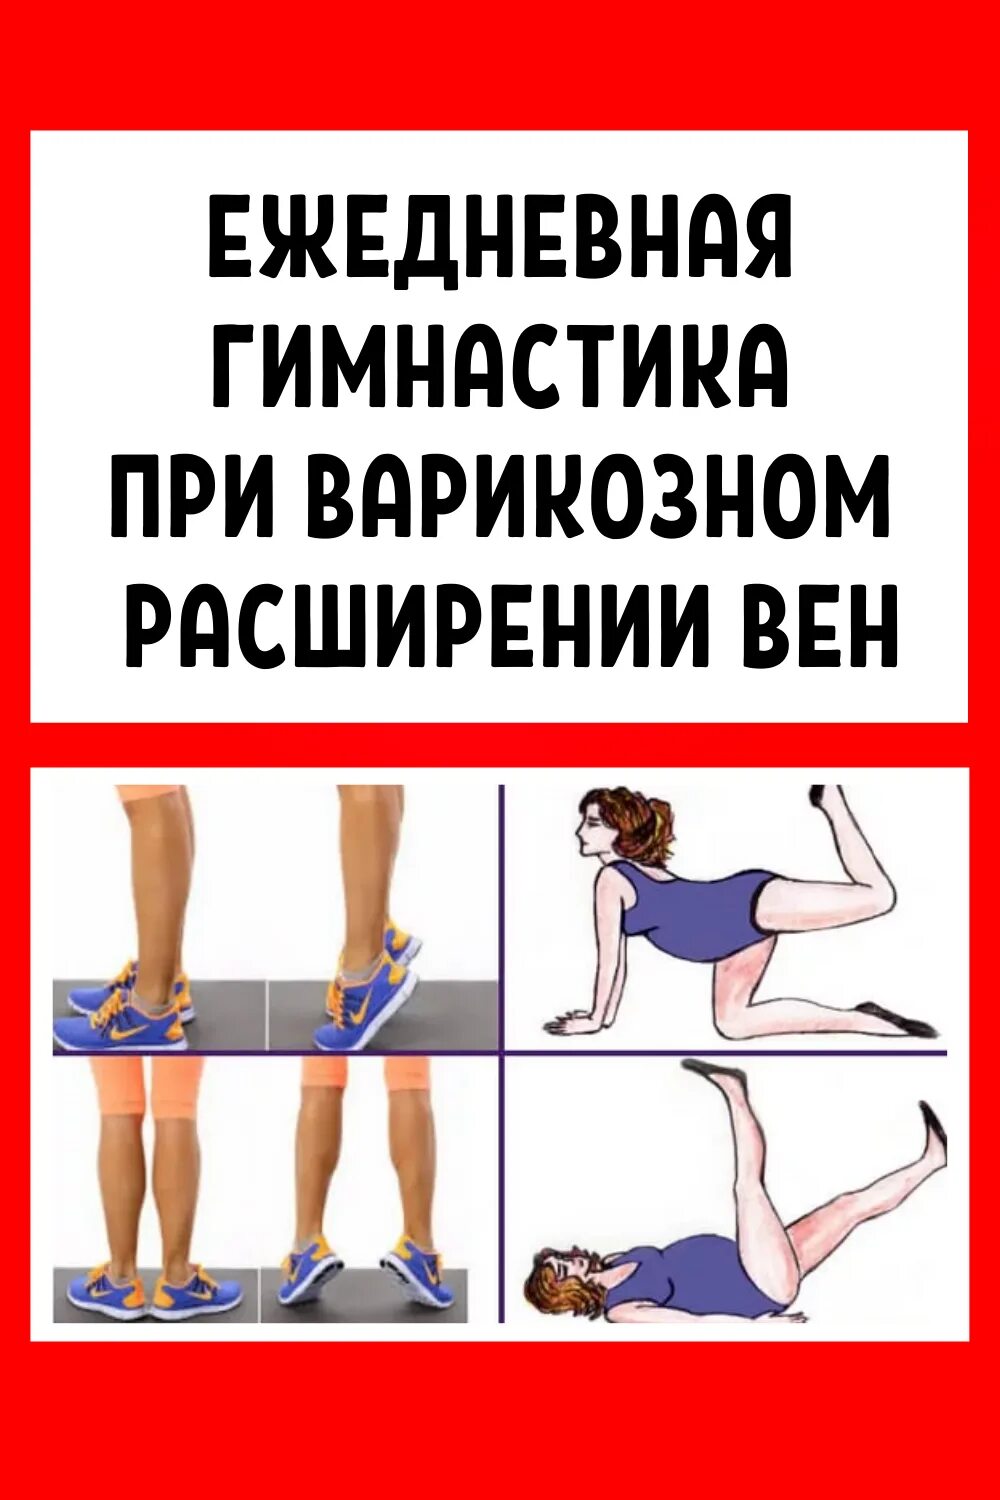 Упражнения притварикозе. Упражнения от варикоза на ногах. Упражнения при варикозе нижних конечностей. Упражнения при варикозном расширении